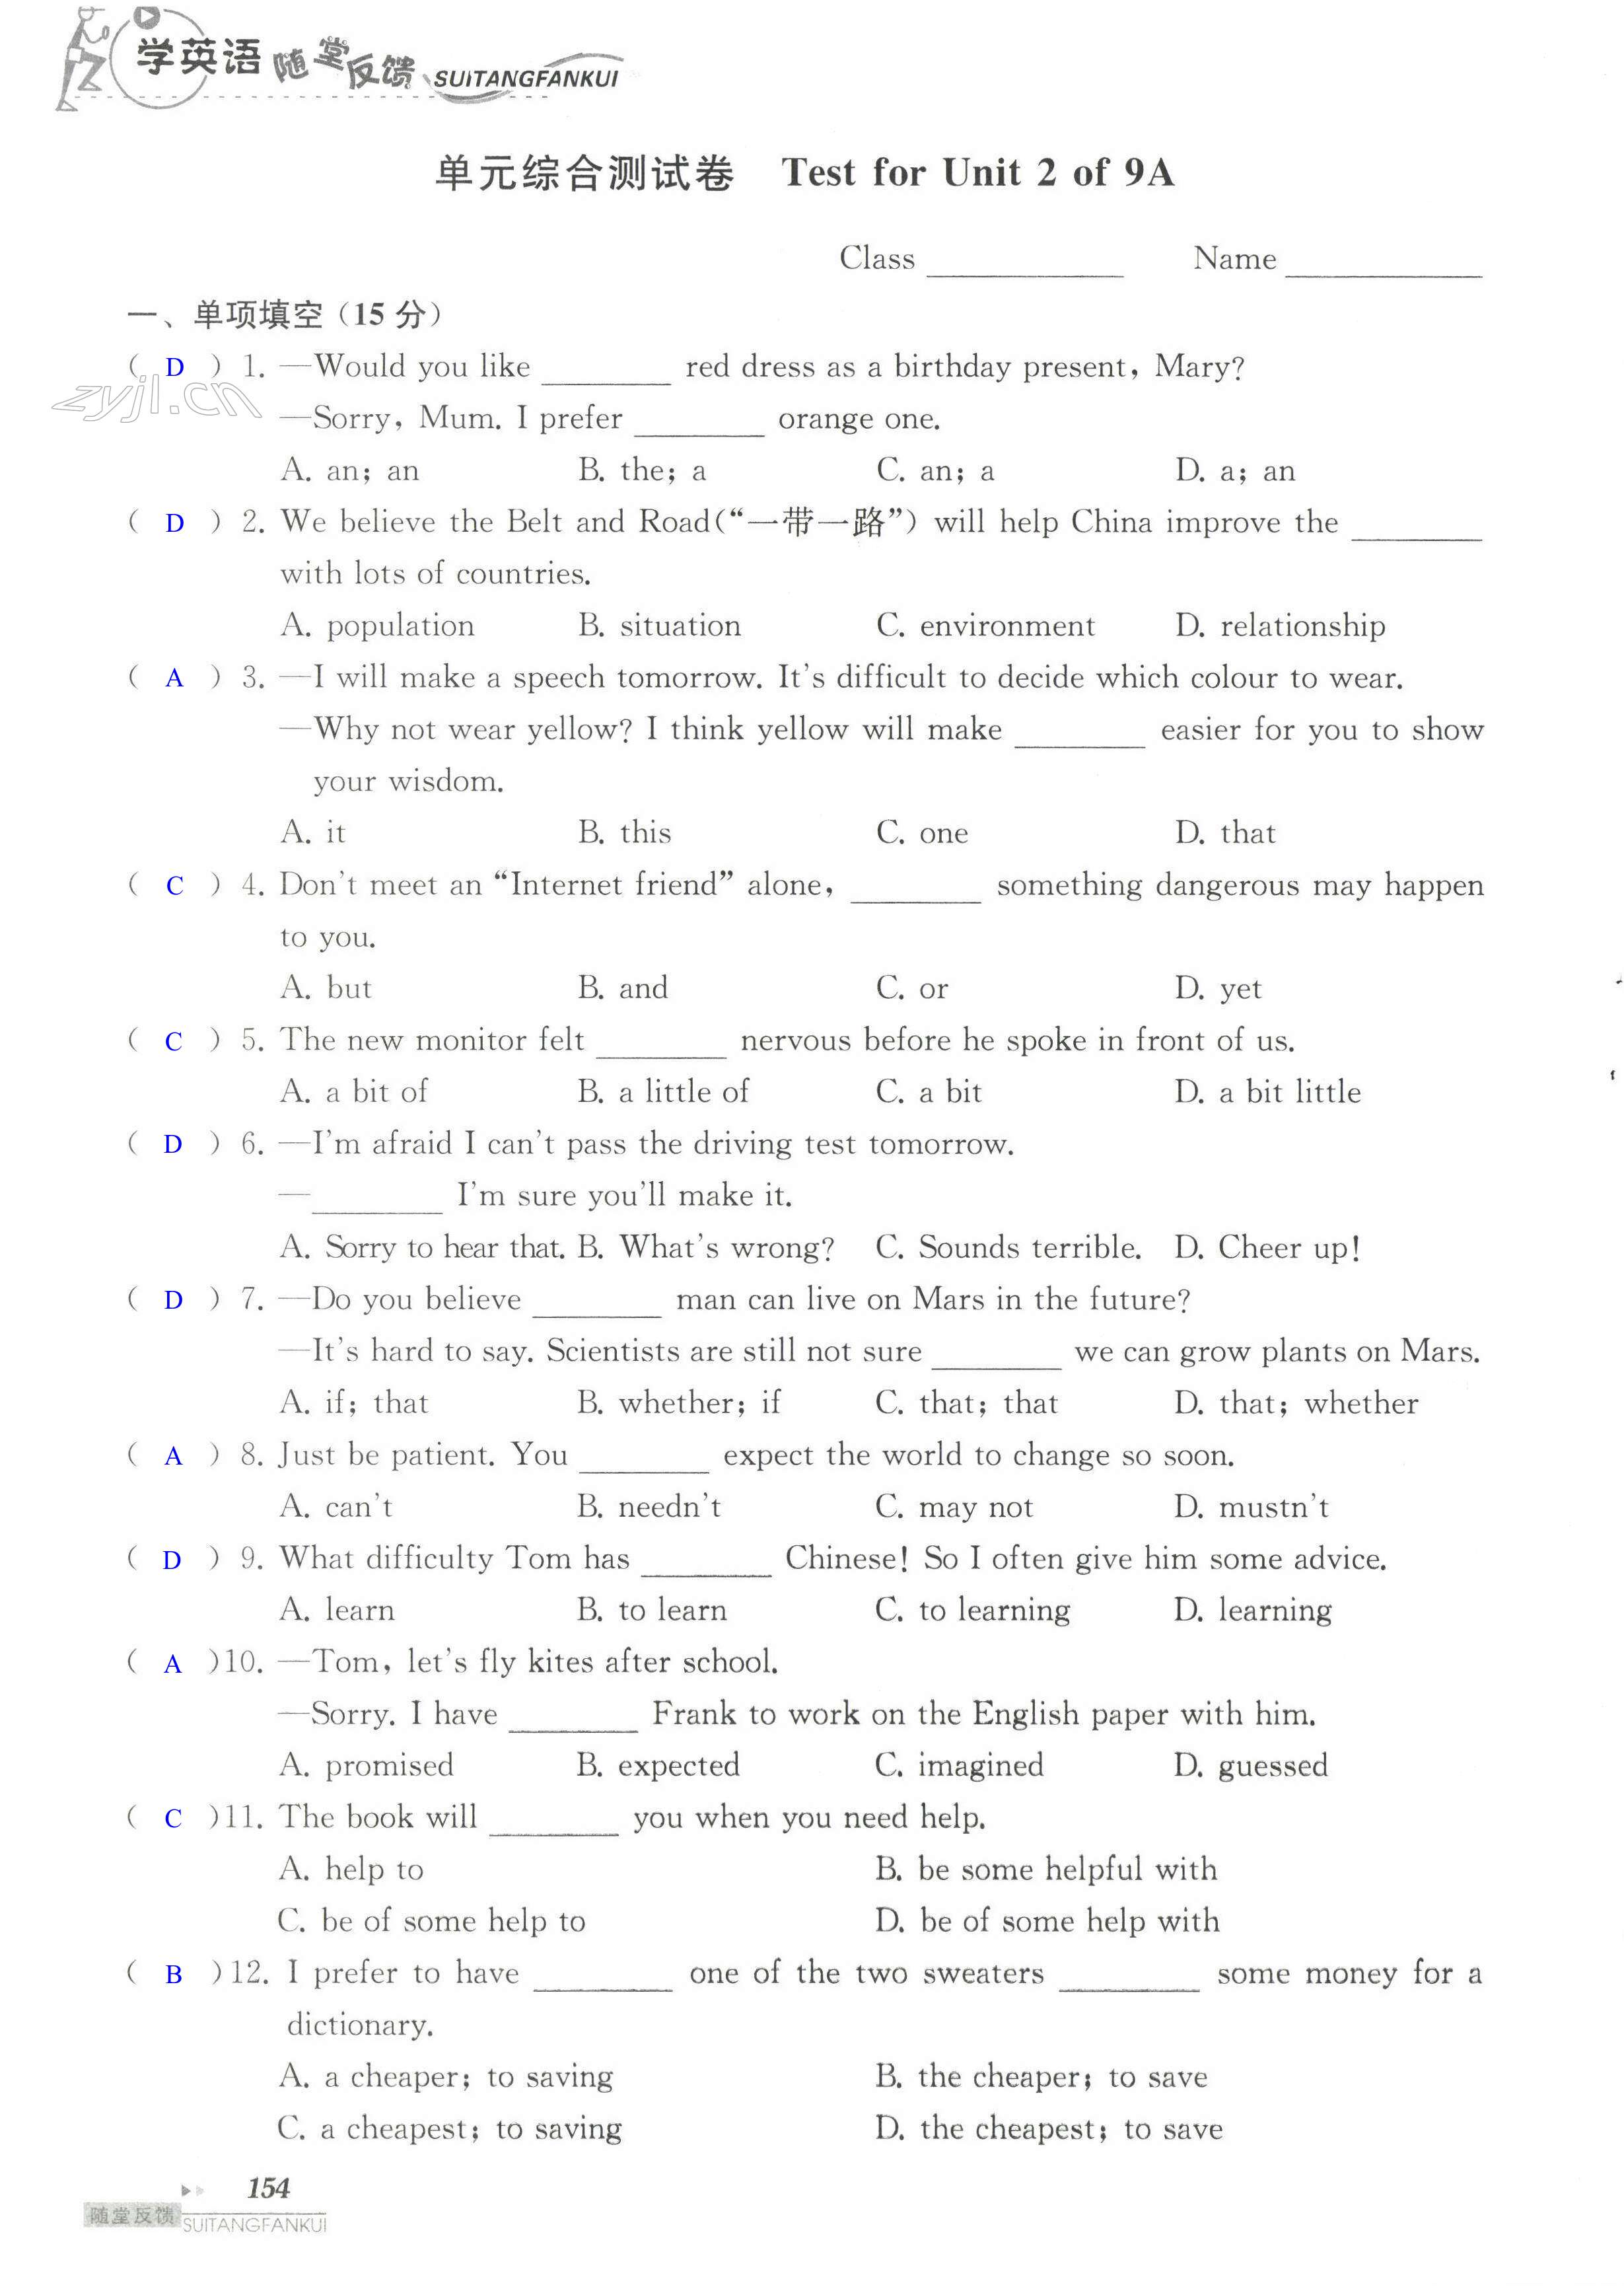 单元综合测试卷 Test for Unit 2 of 9A - 第154页